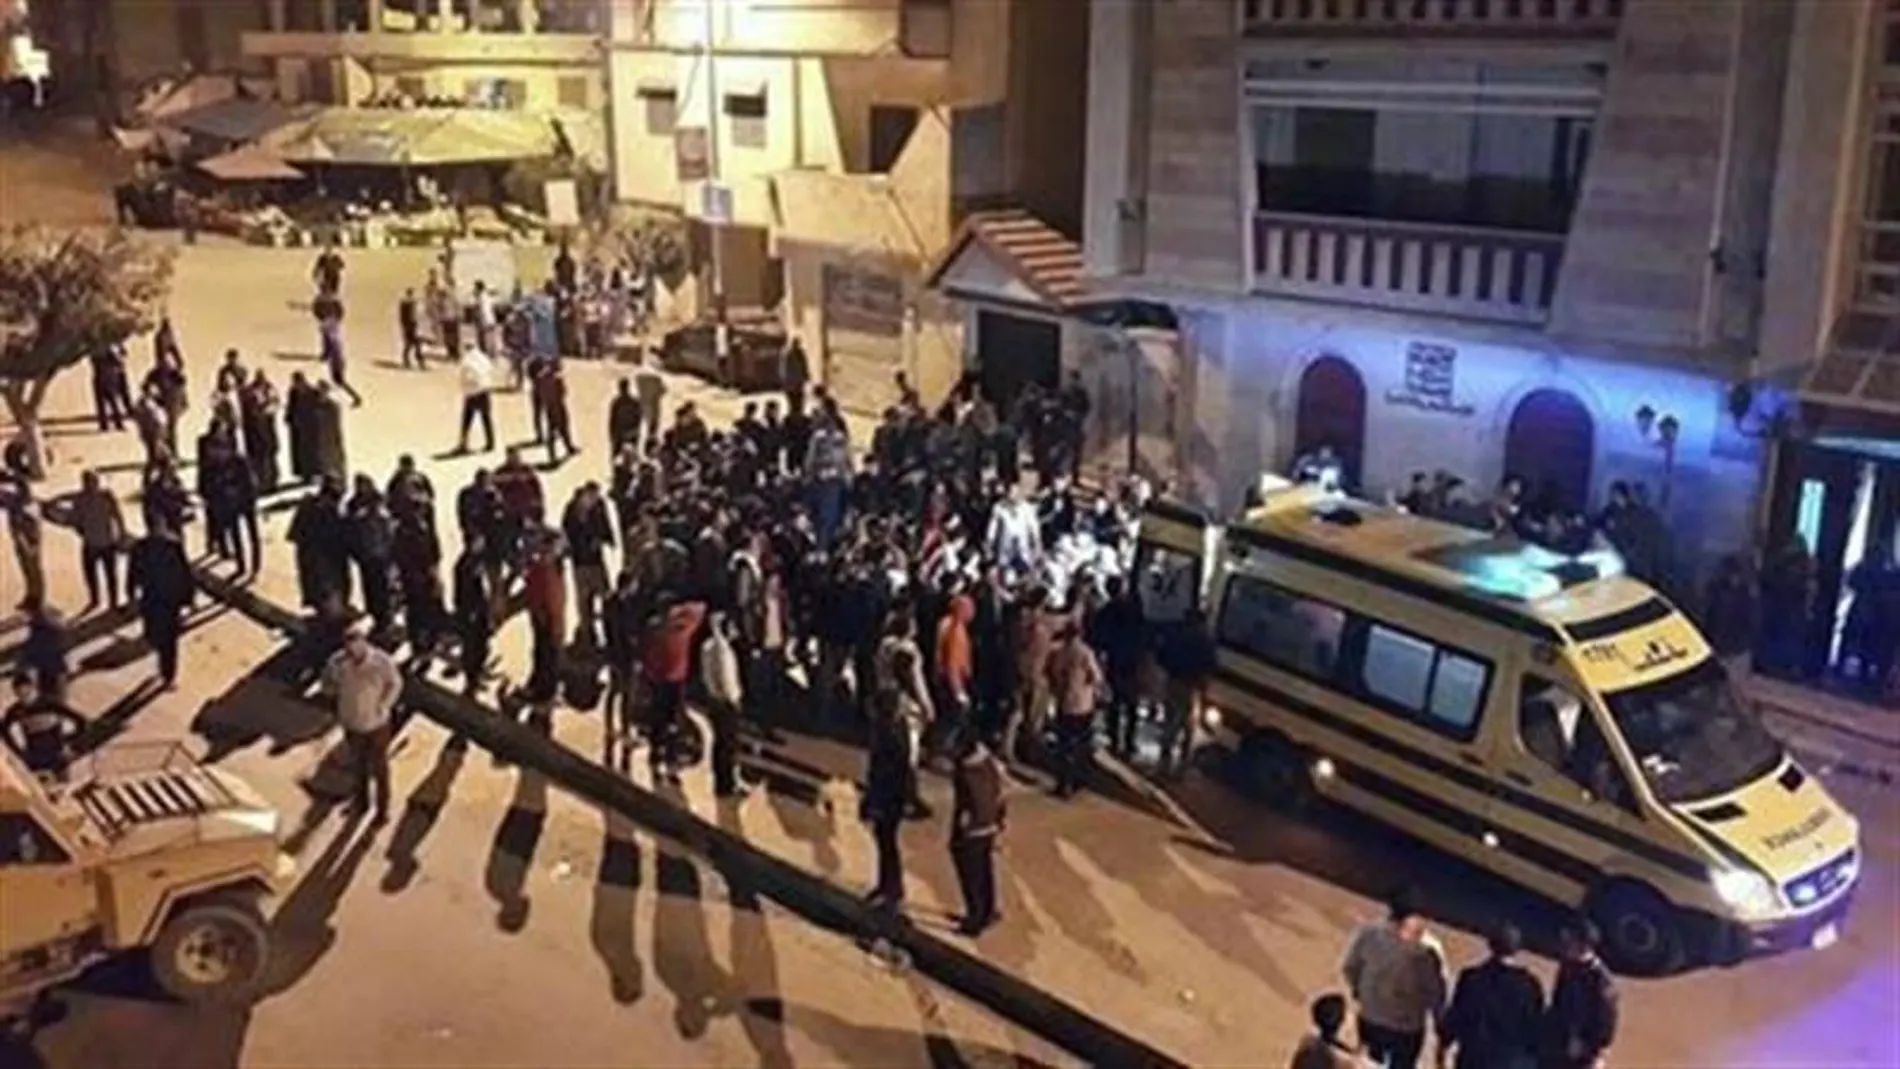 Médicos y curiosos se congregan en el lugar de un atentado registrado hace un año en Arish, capital del Sinaí en Egipto